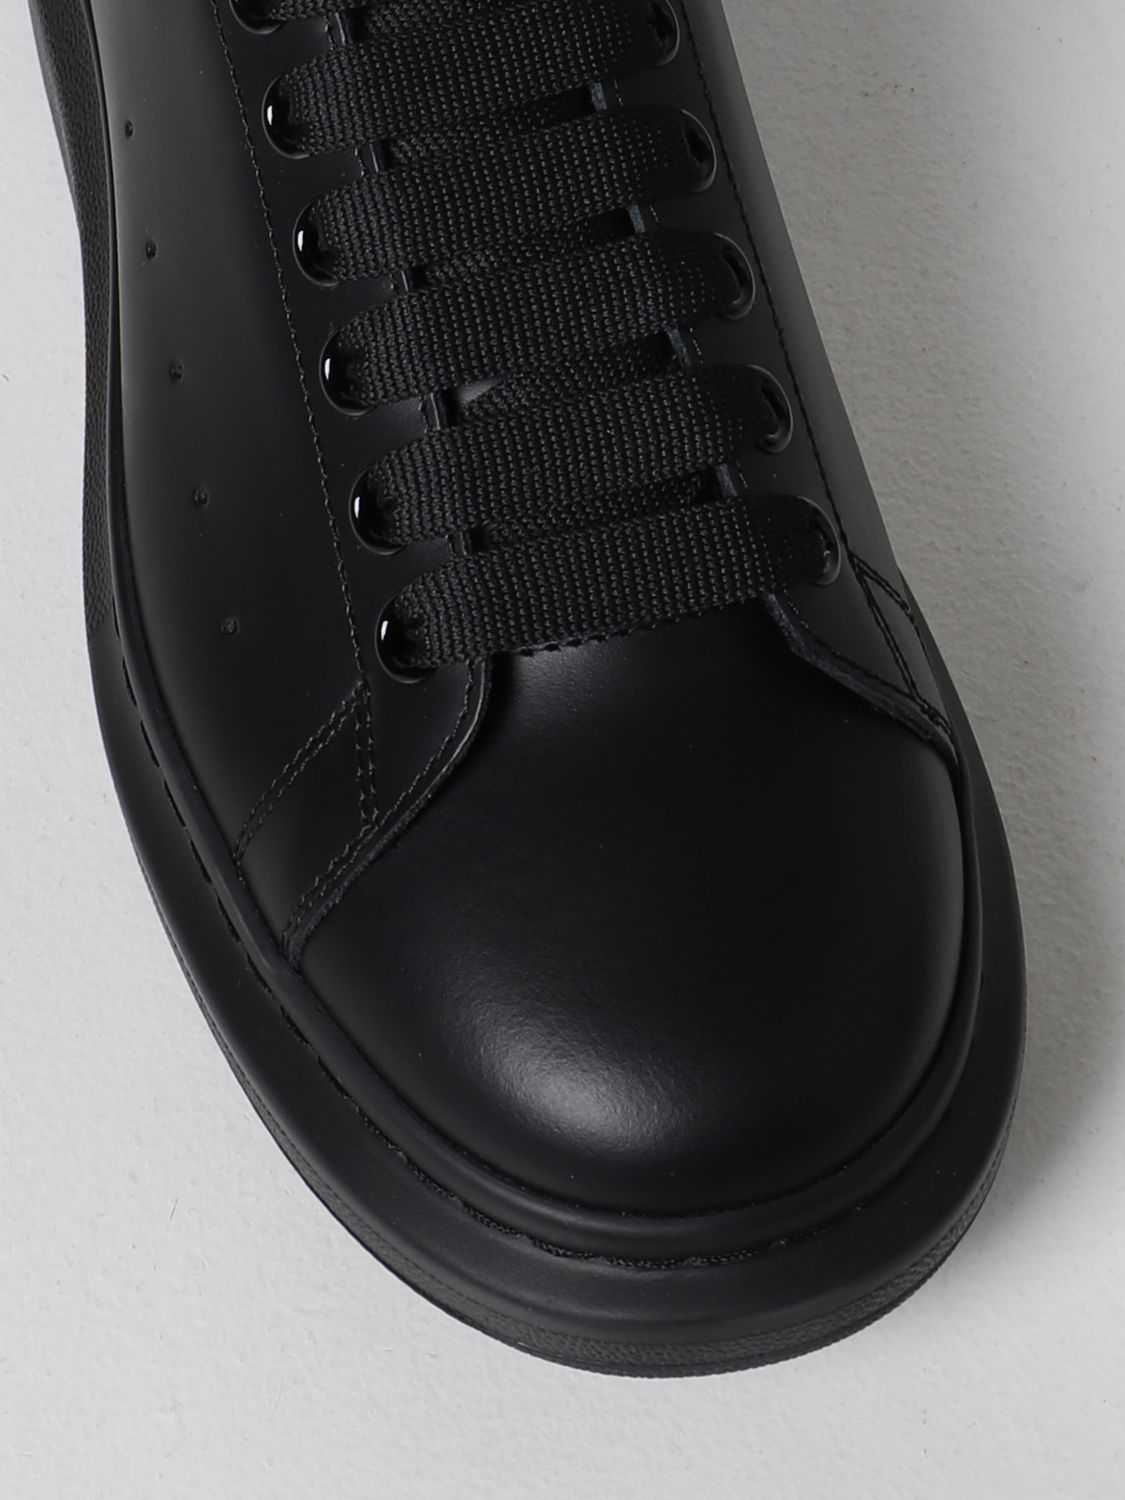 ALEXANDER MCQUEEN: Larry leather sneakers - Black  Alexander Mcqueen  sneakers 553761WHGP0 online at